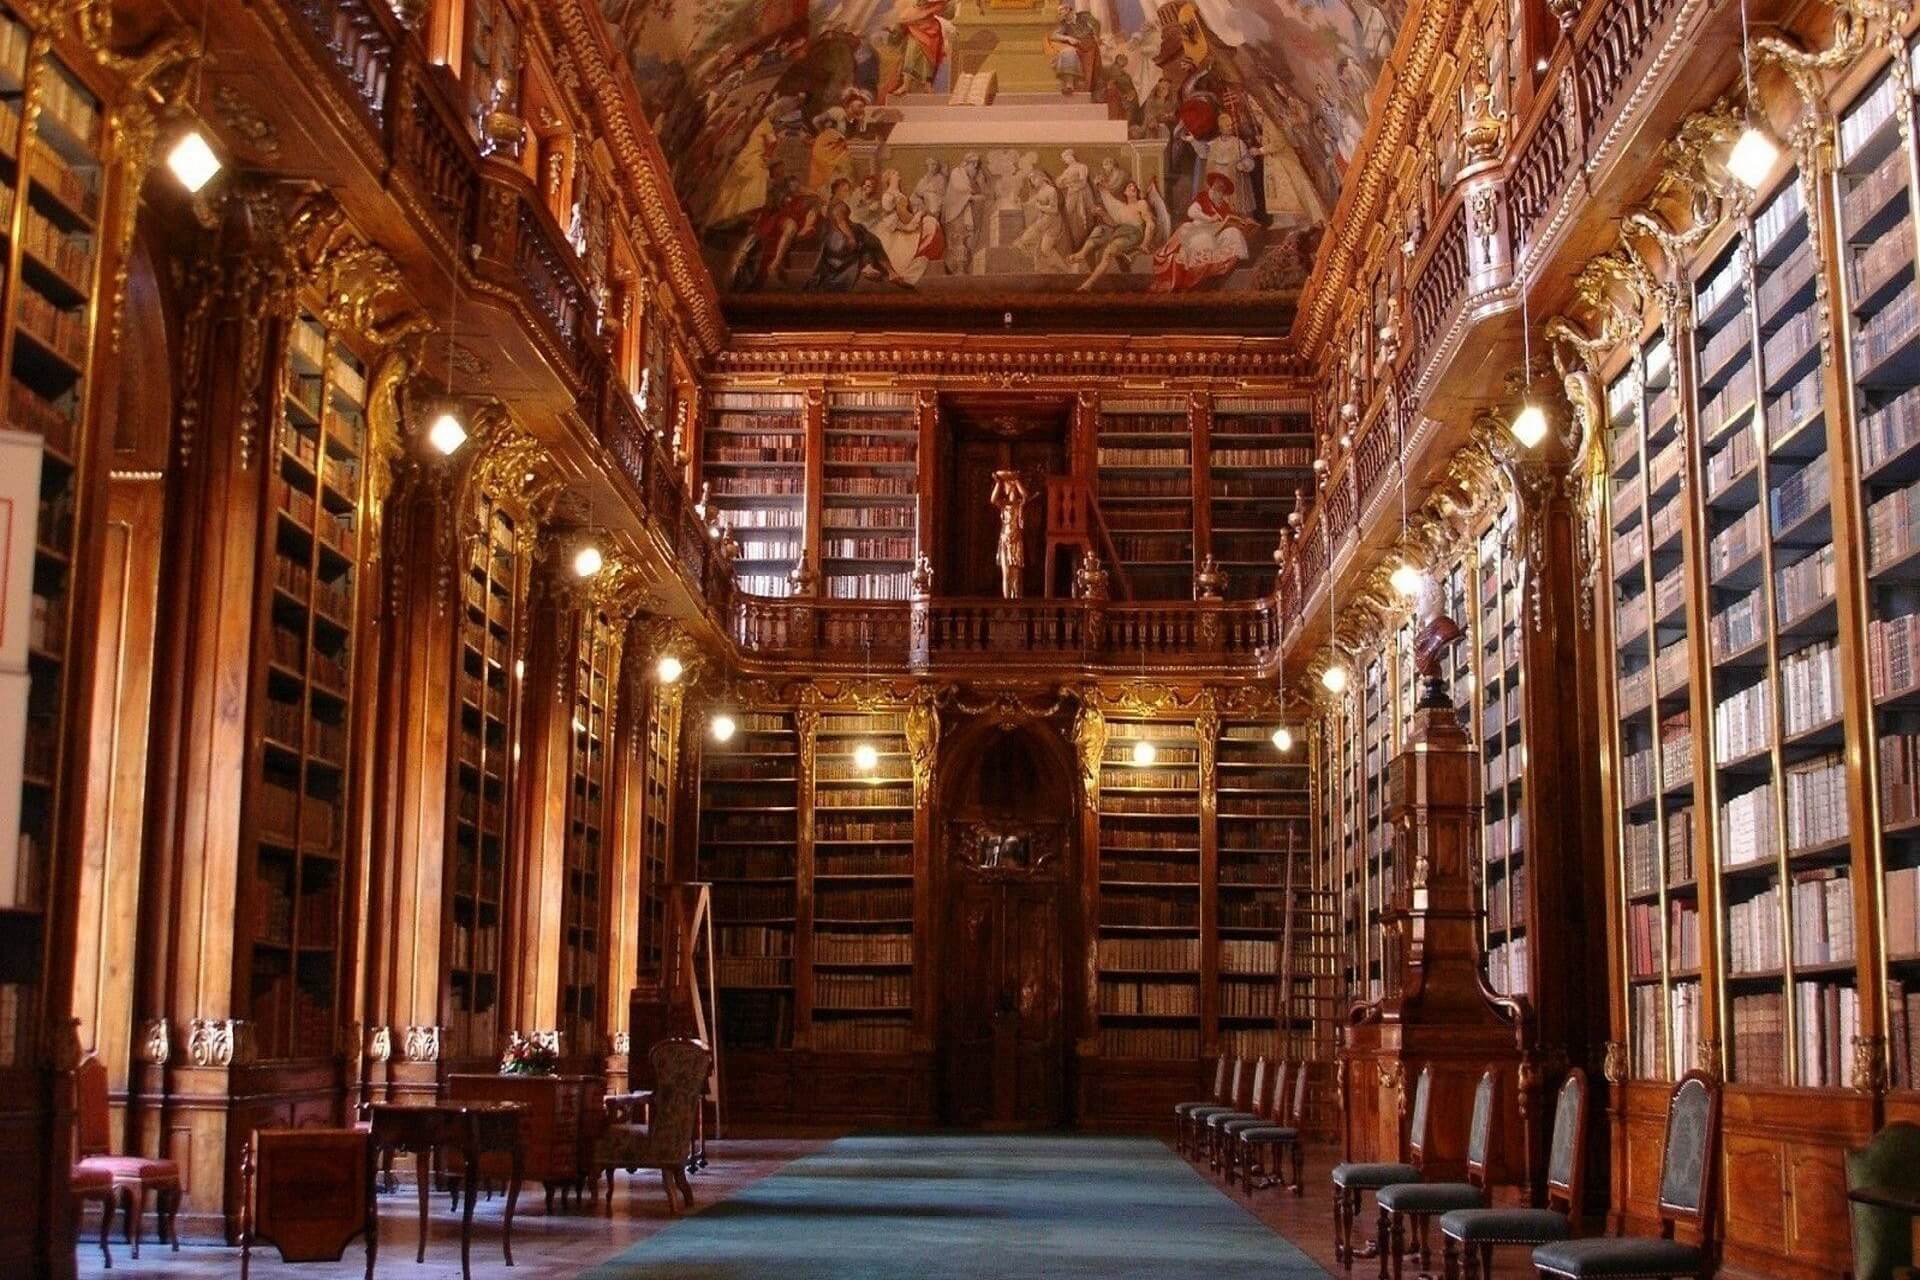 Большой зал библиотеки